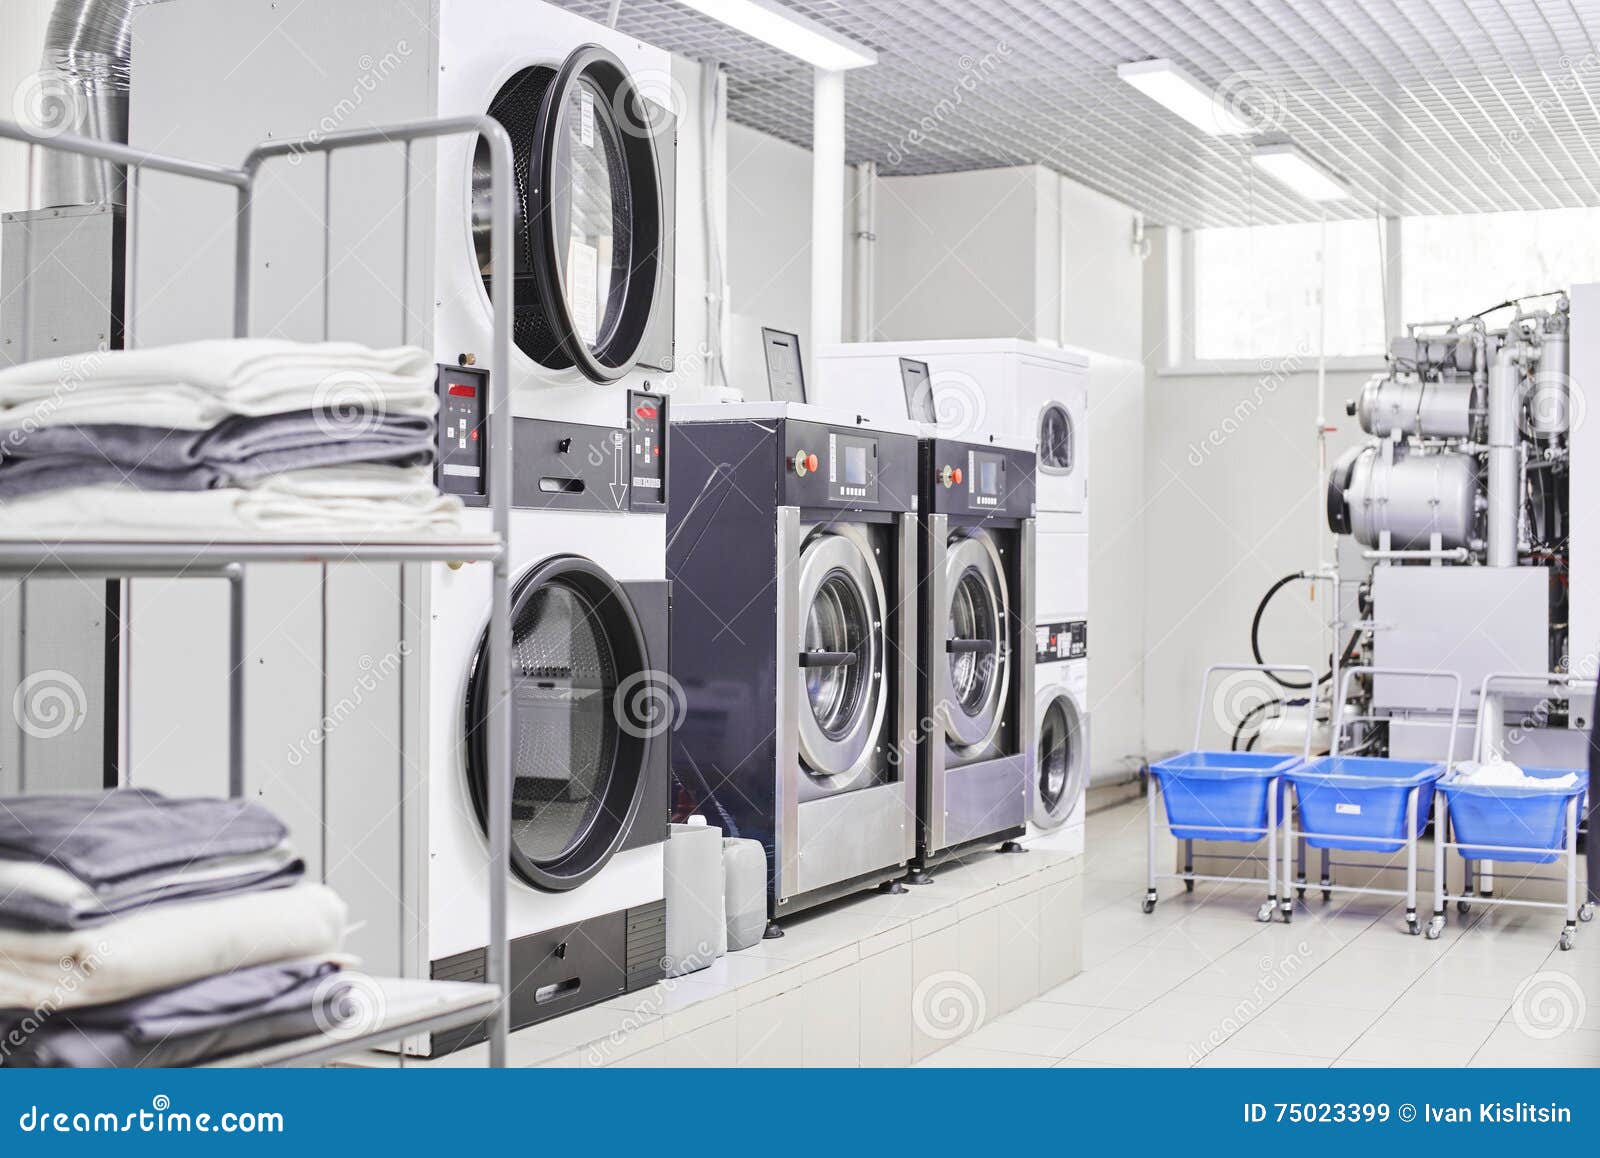 Washing machine stock image. Image of clothing, business - 75023399